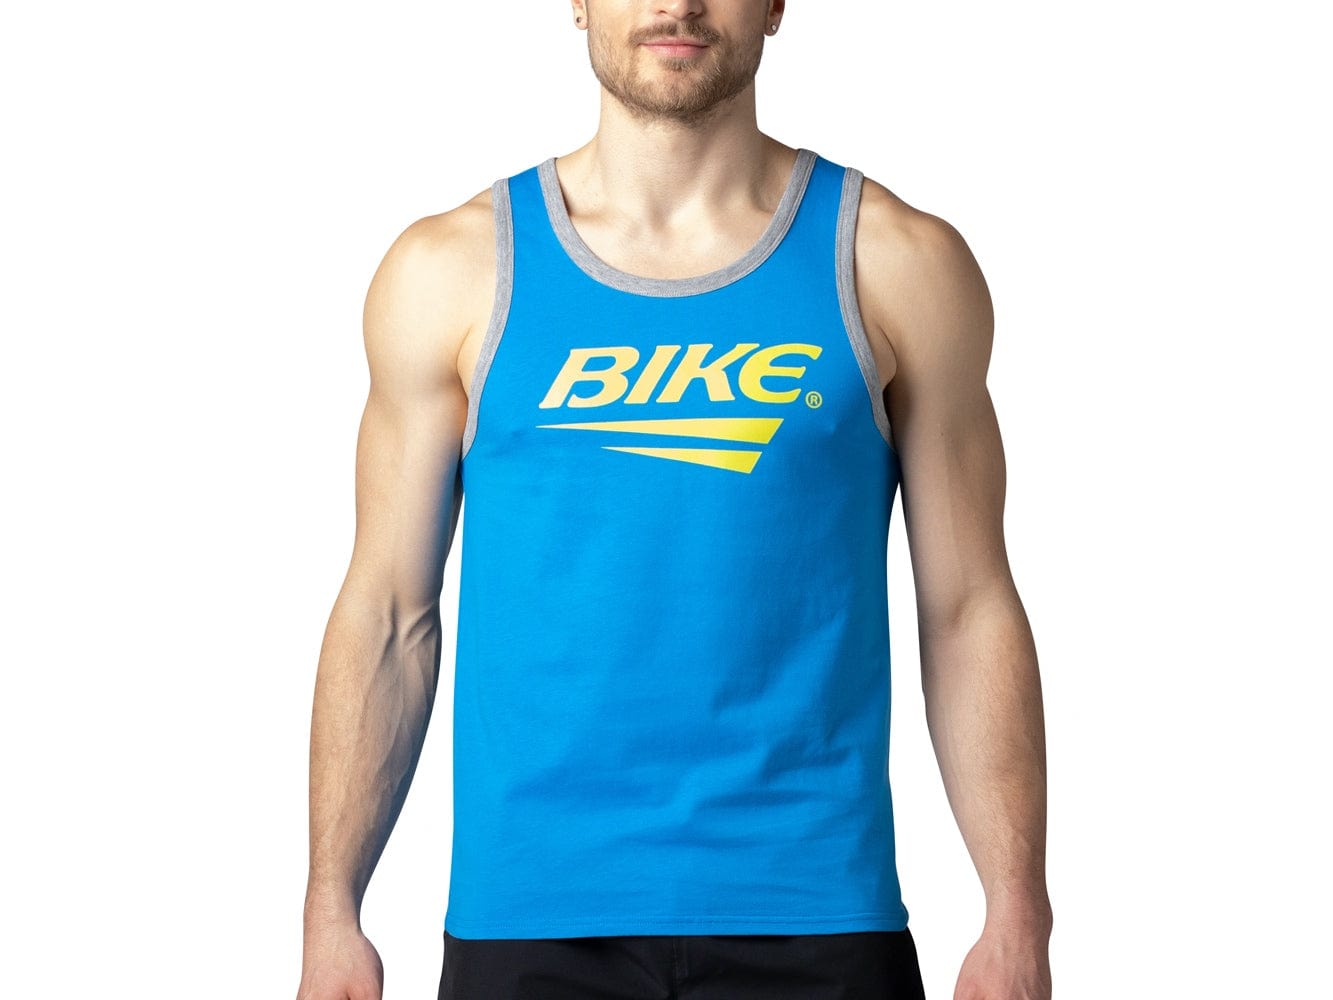 Man wearing blue BIKE® logo tank top